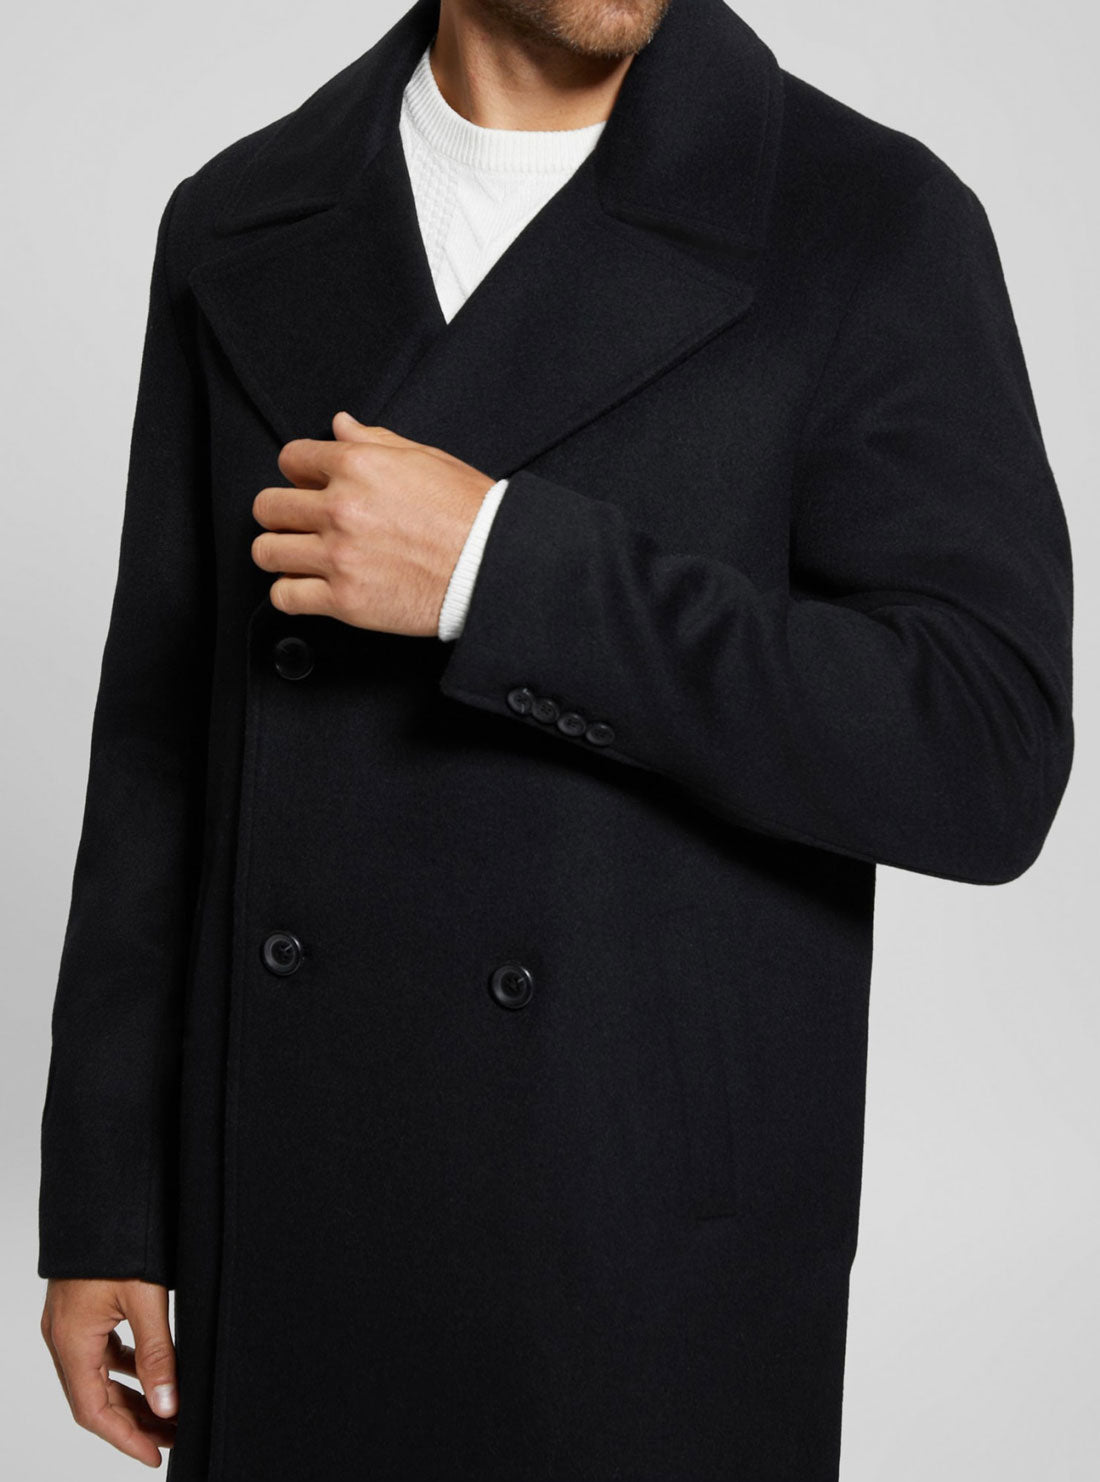 Black Bel Air Melton Wool Coat | GUESS Men's apparel | detail view